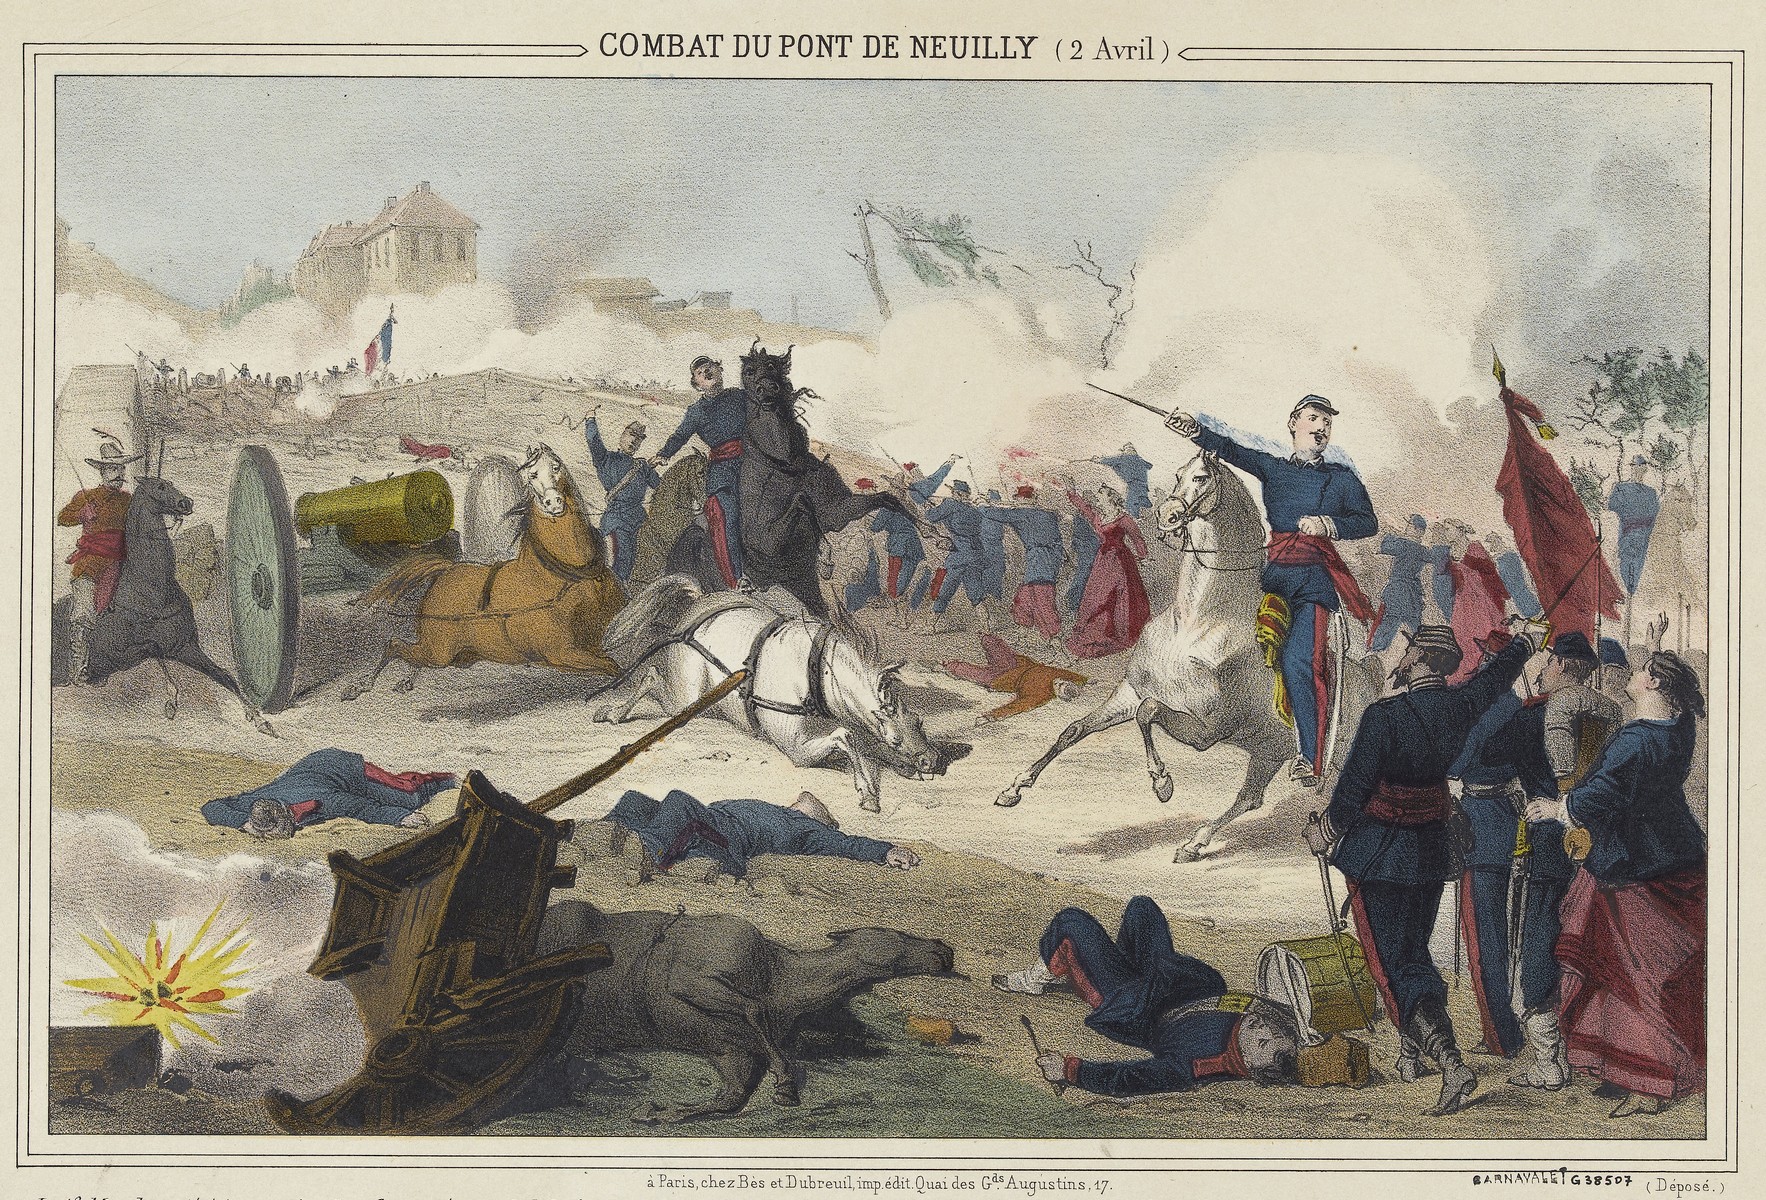 Combat du pont de Nauilly, 2 avril 1871 - Lithographie coloriée (source : © Musée Carnavalet - Histoire de Paris)